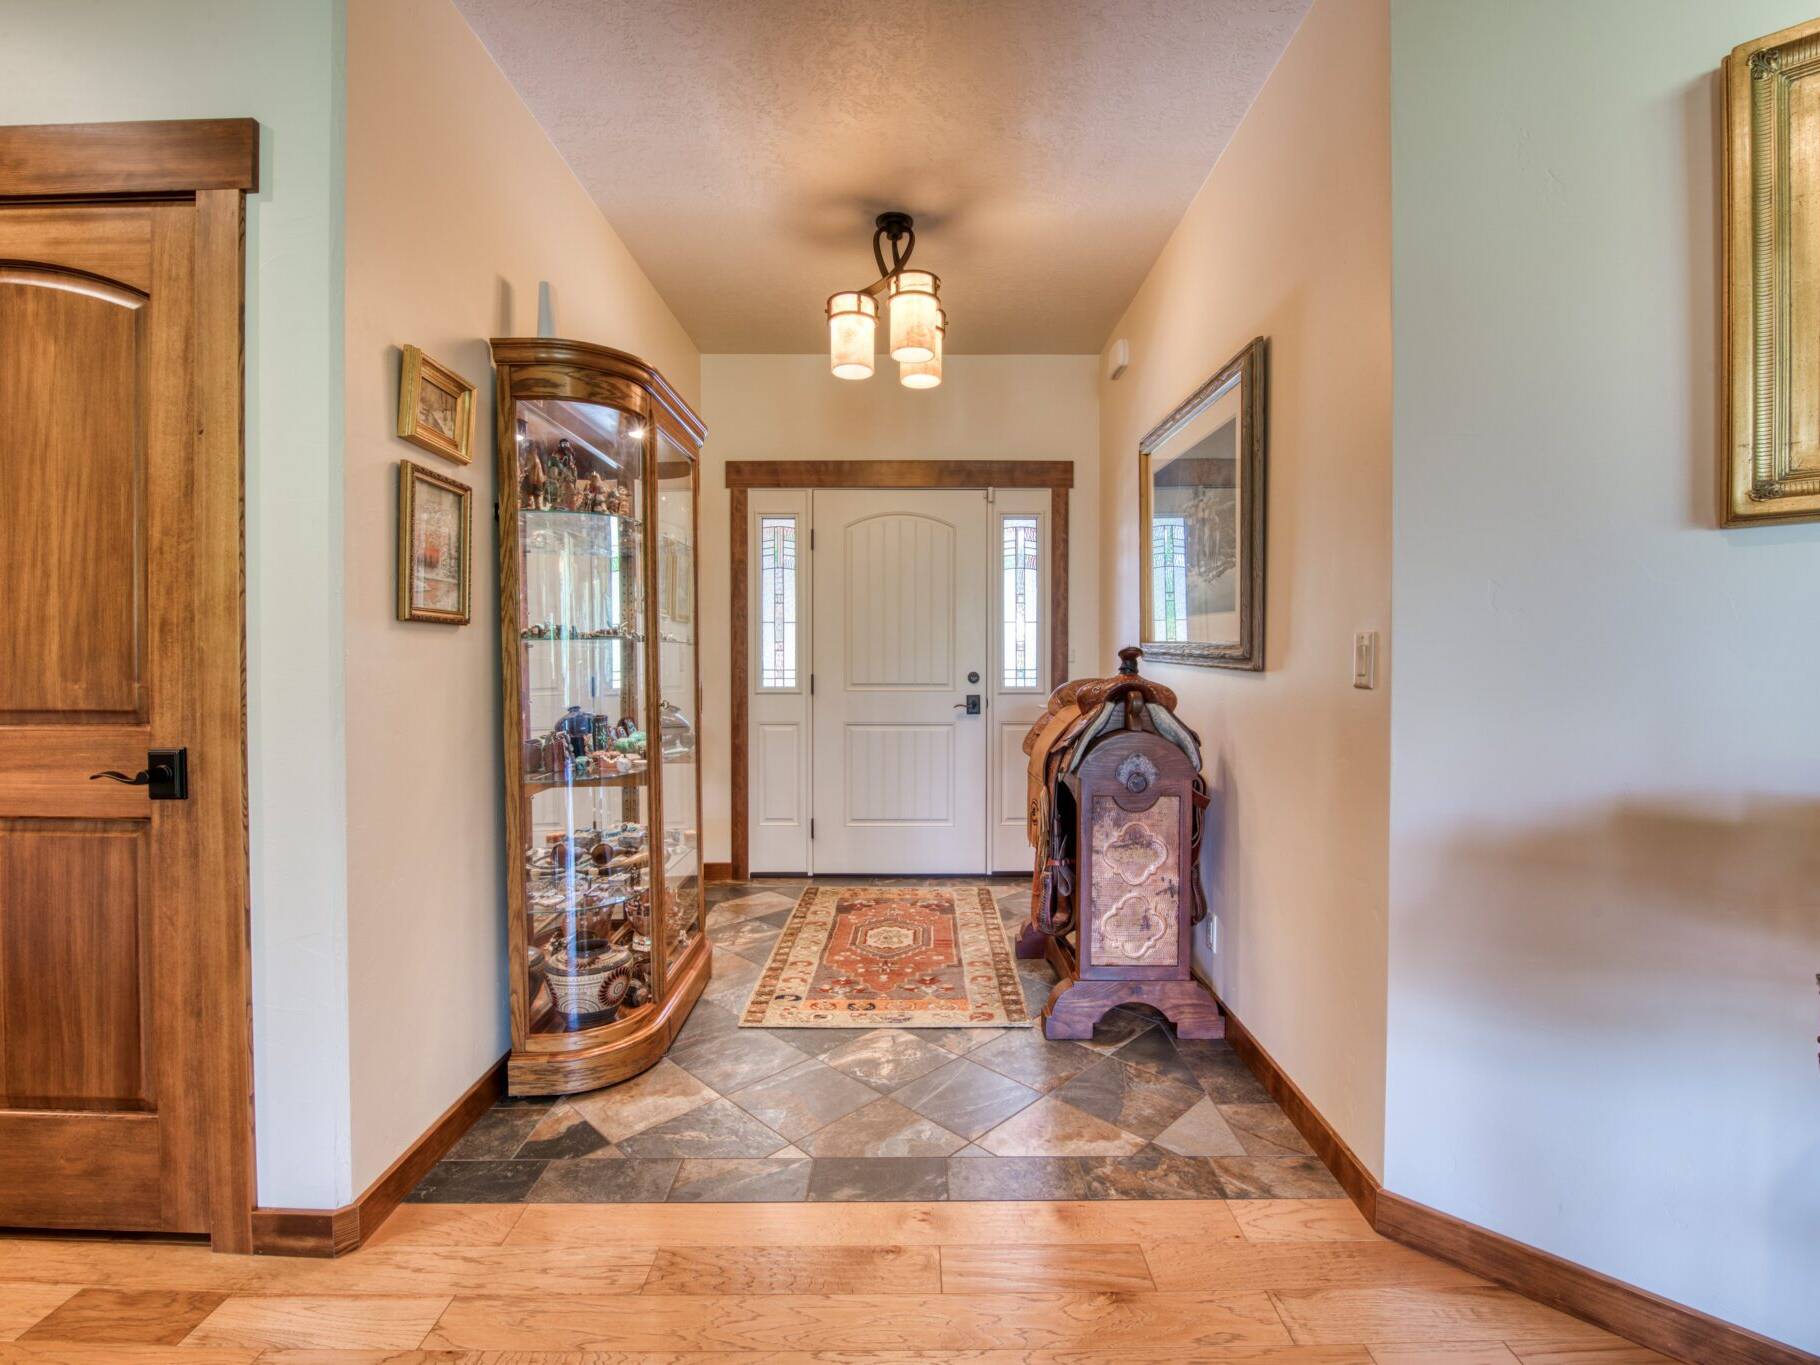 Entry foyer with tile floor in a custom house near Hamilton, MT